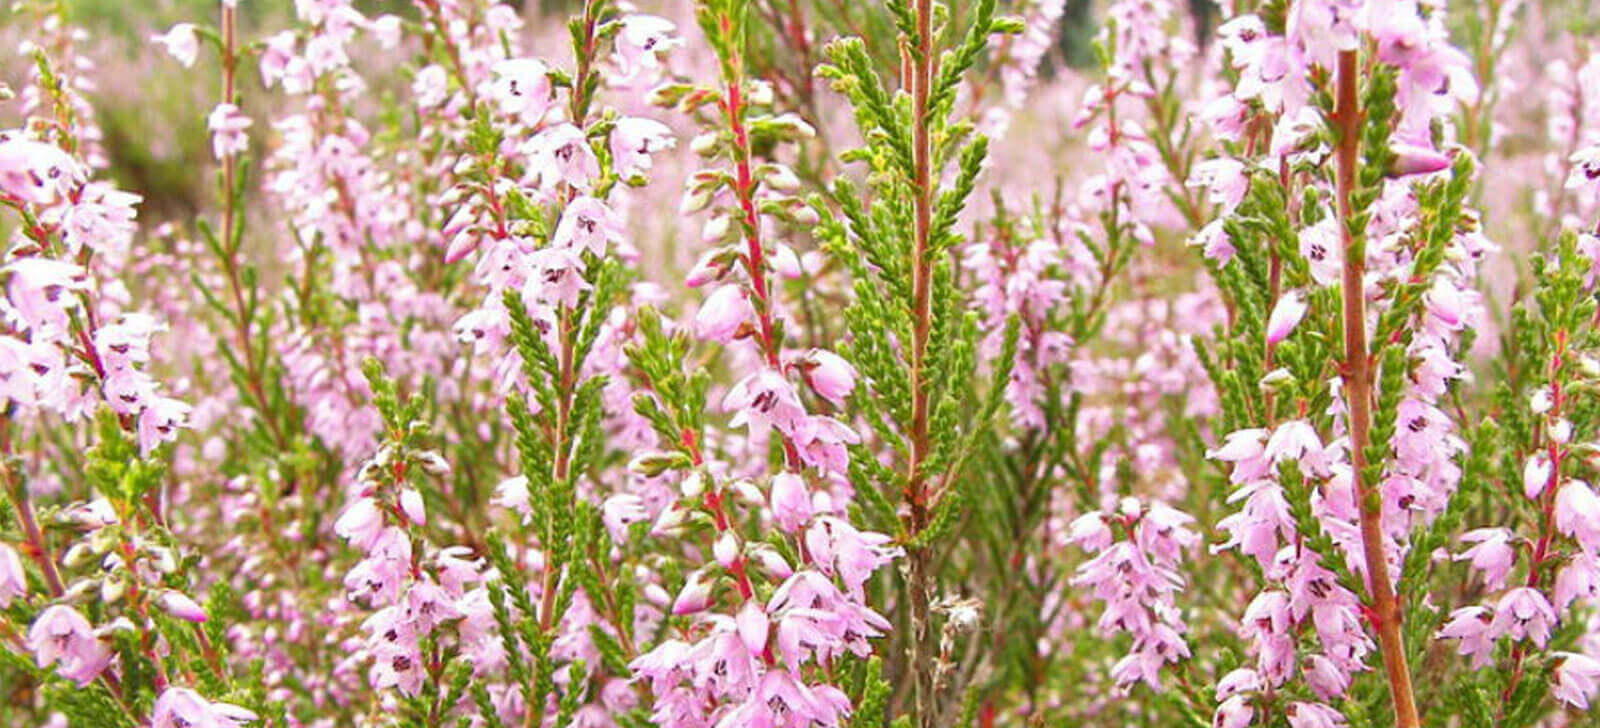 farmacia manipulacao campinas nova natural blog natureza magistral florais florais bach origem tipos